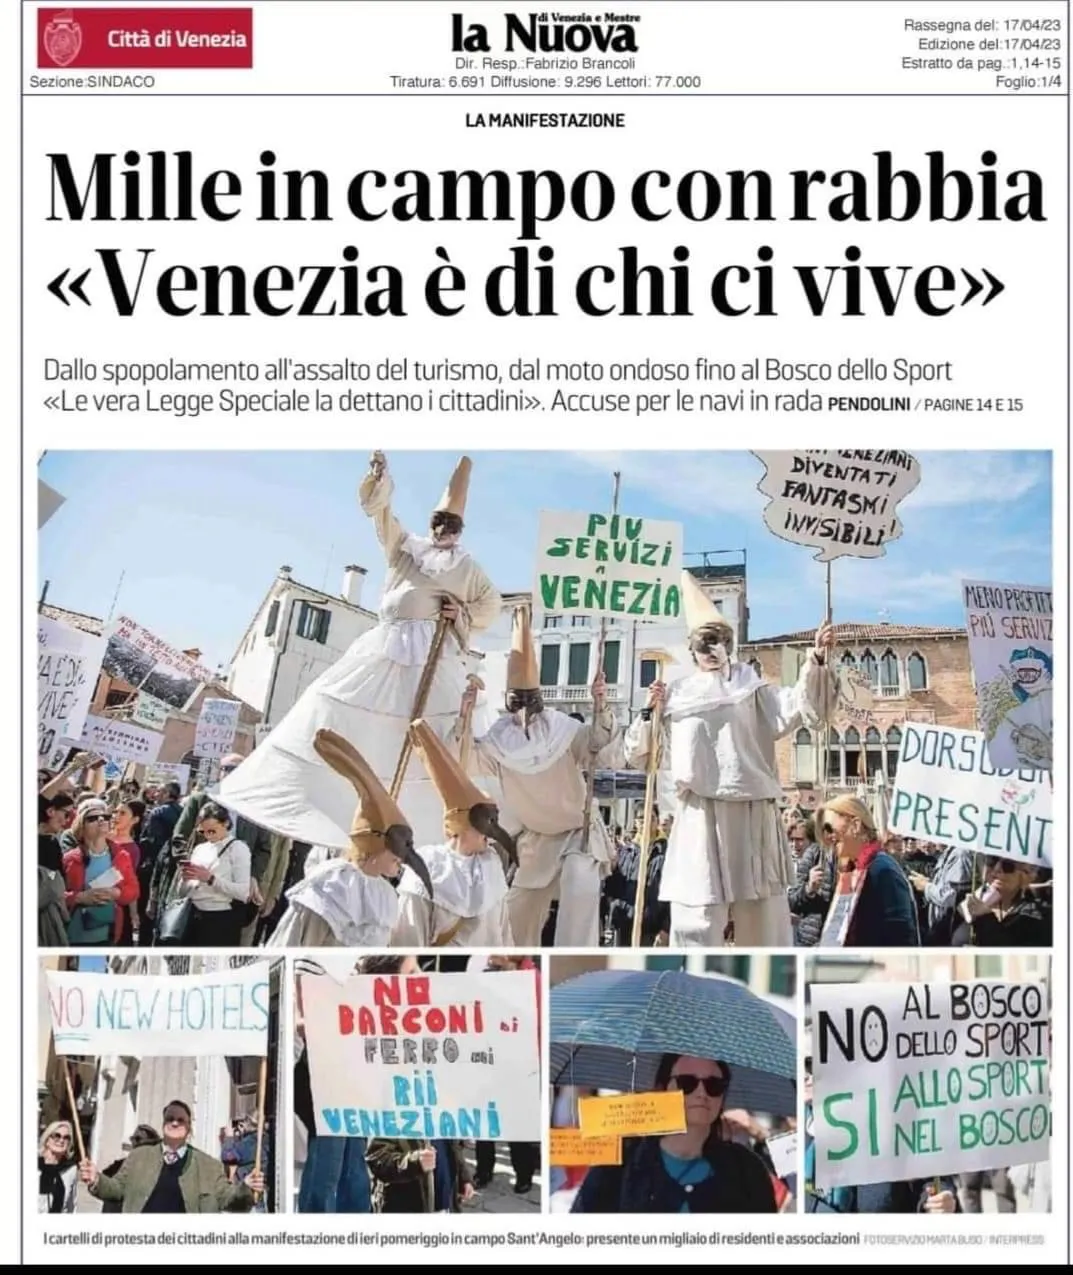 Artikel aus La Nuova über die Demonstration